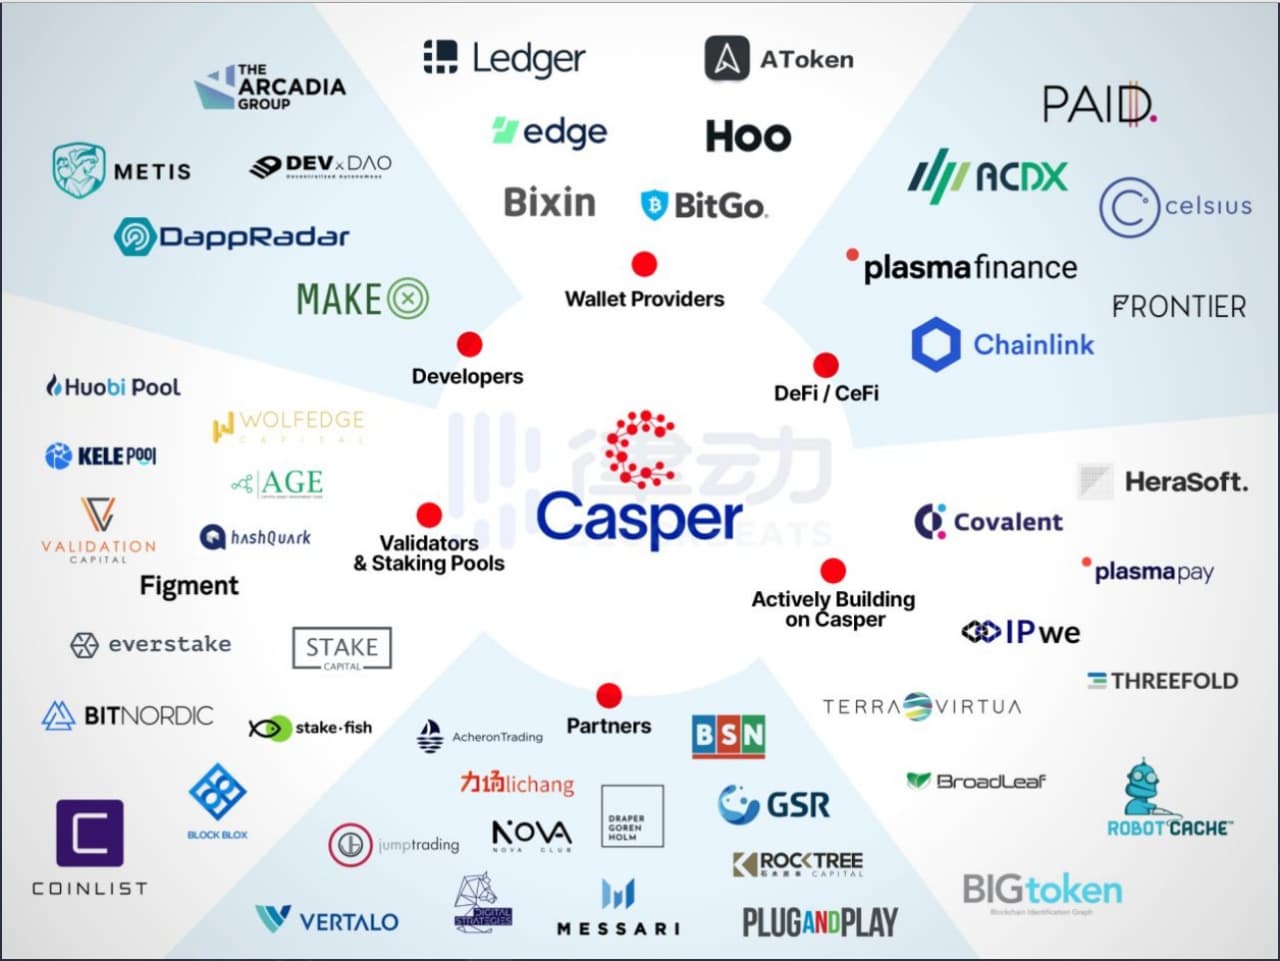 Casper Network